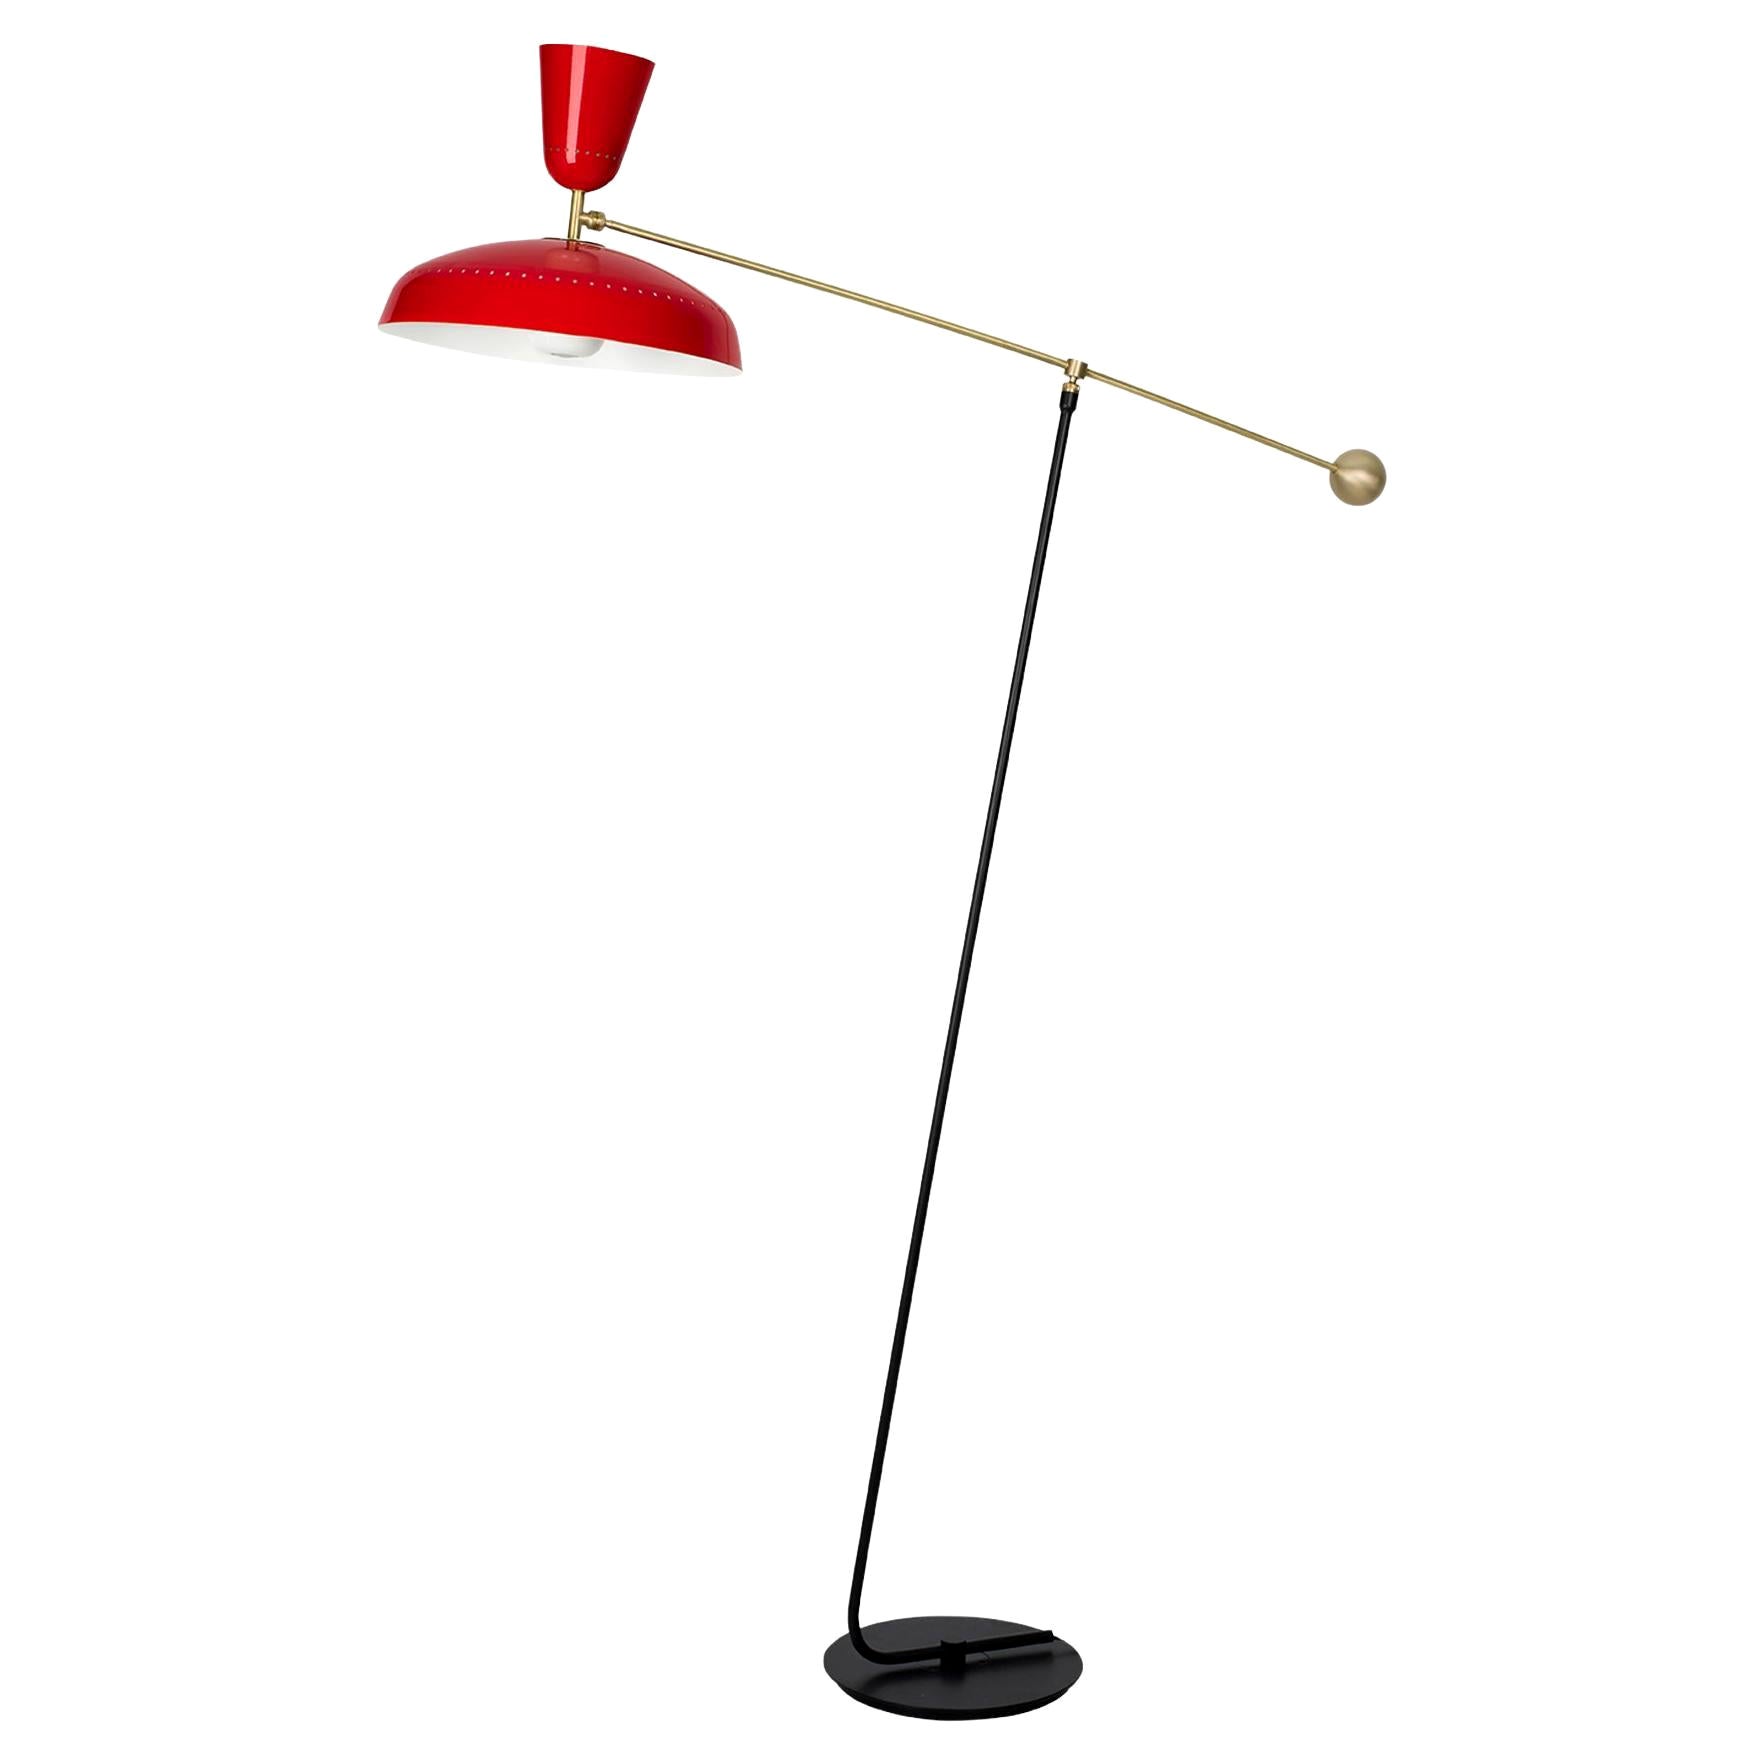 Grand lampadaire « G1 » de Pierre Guariche pour Sammode Studio en rouge